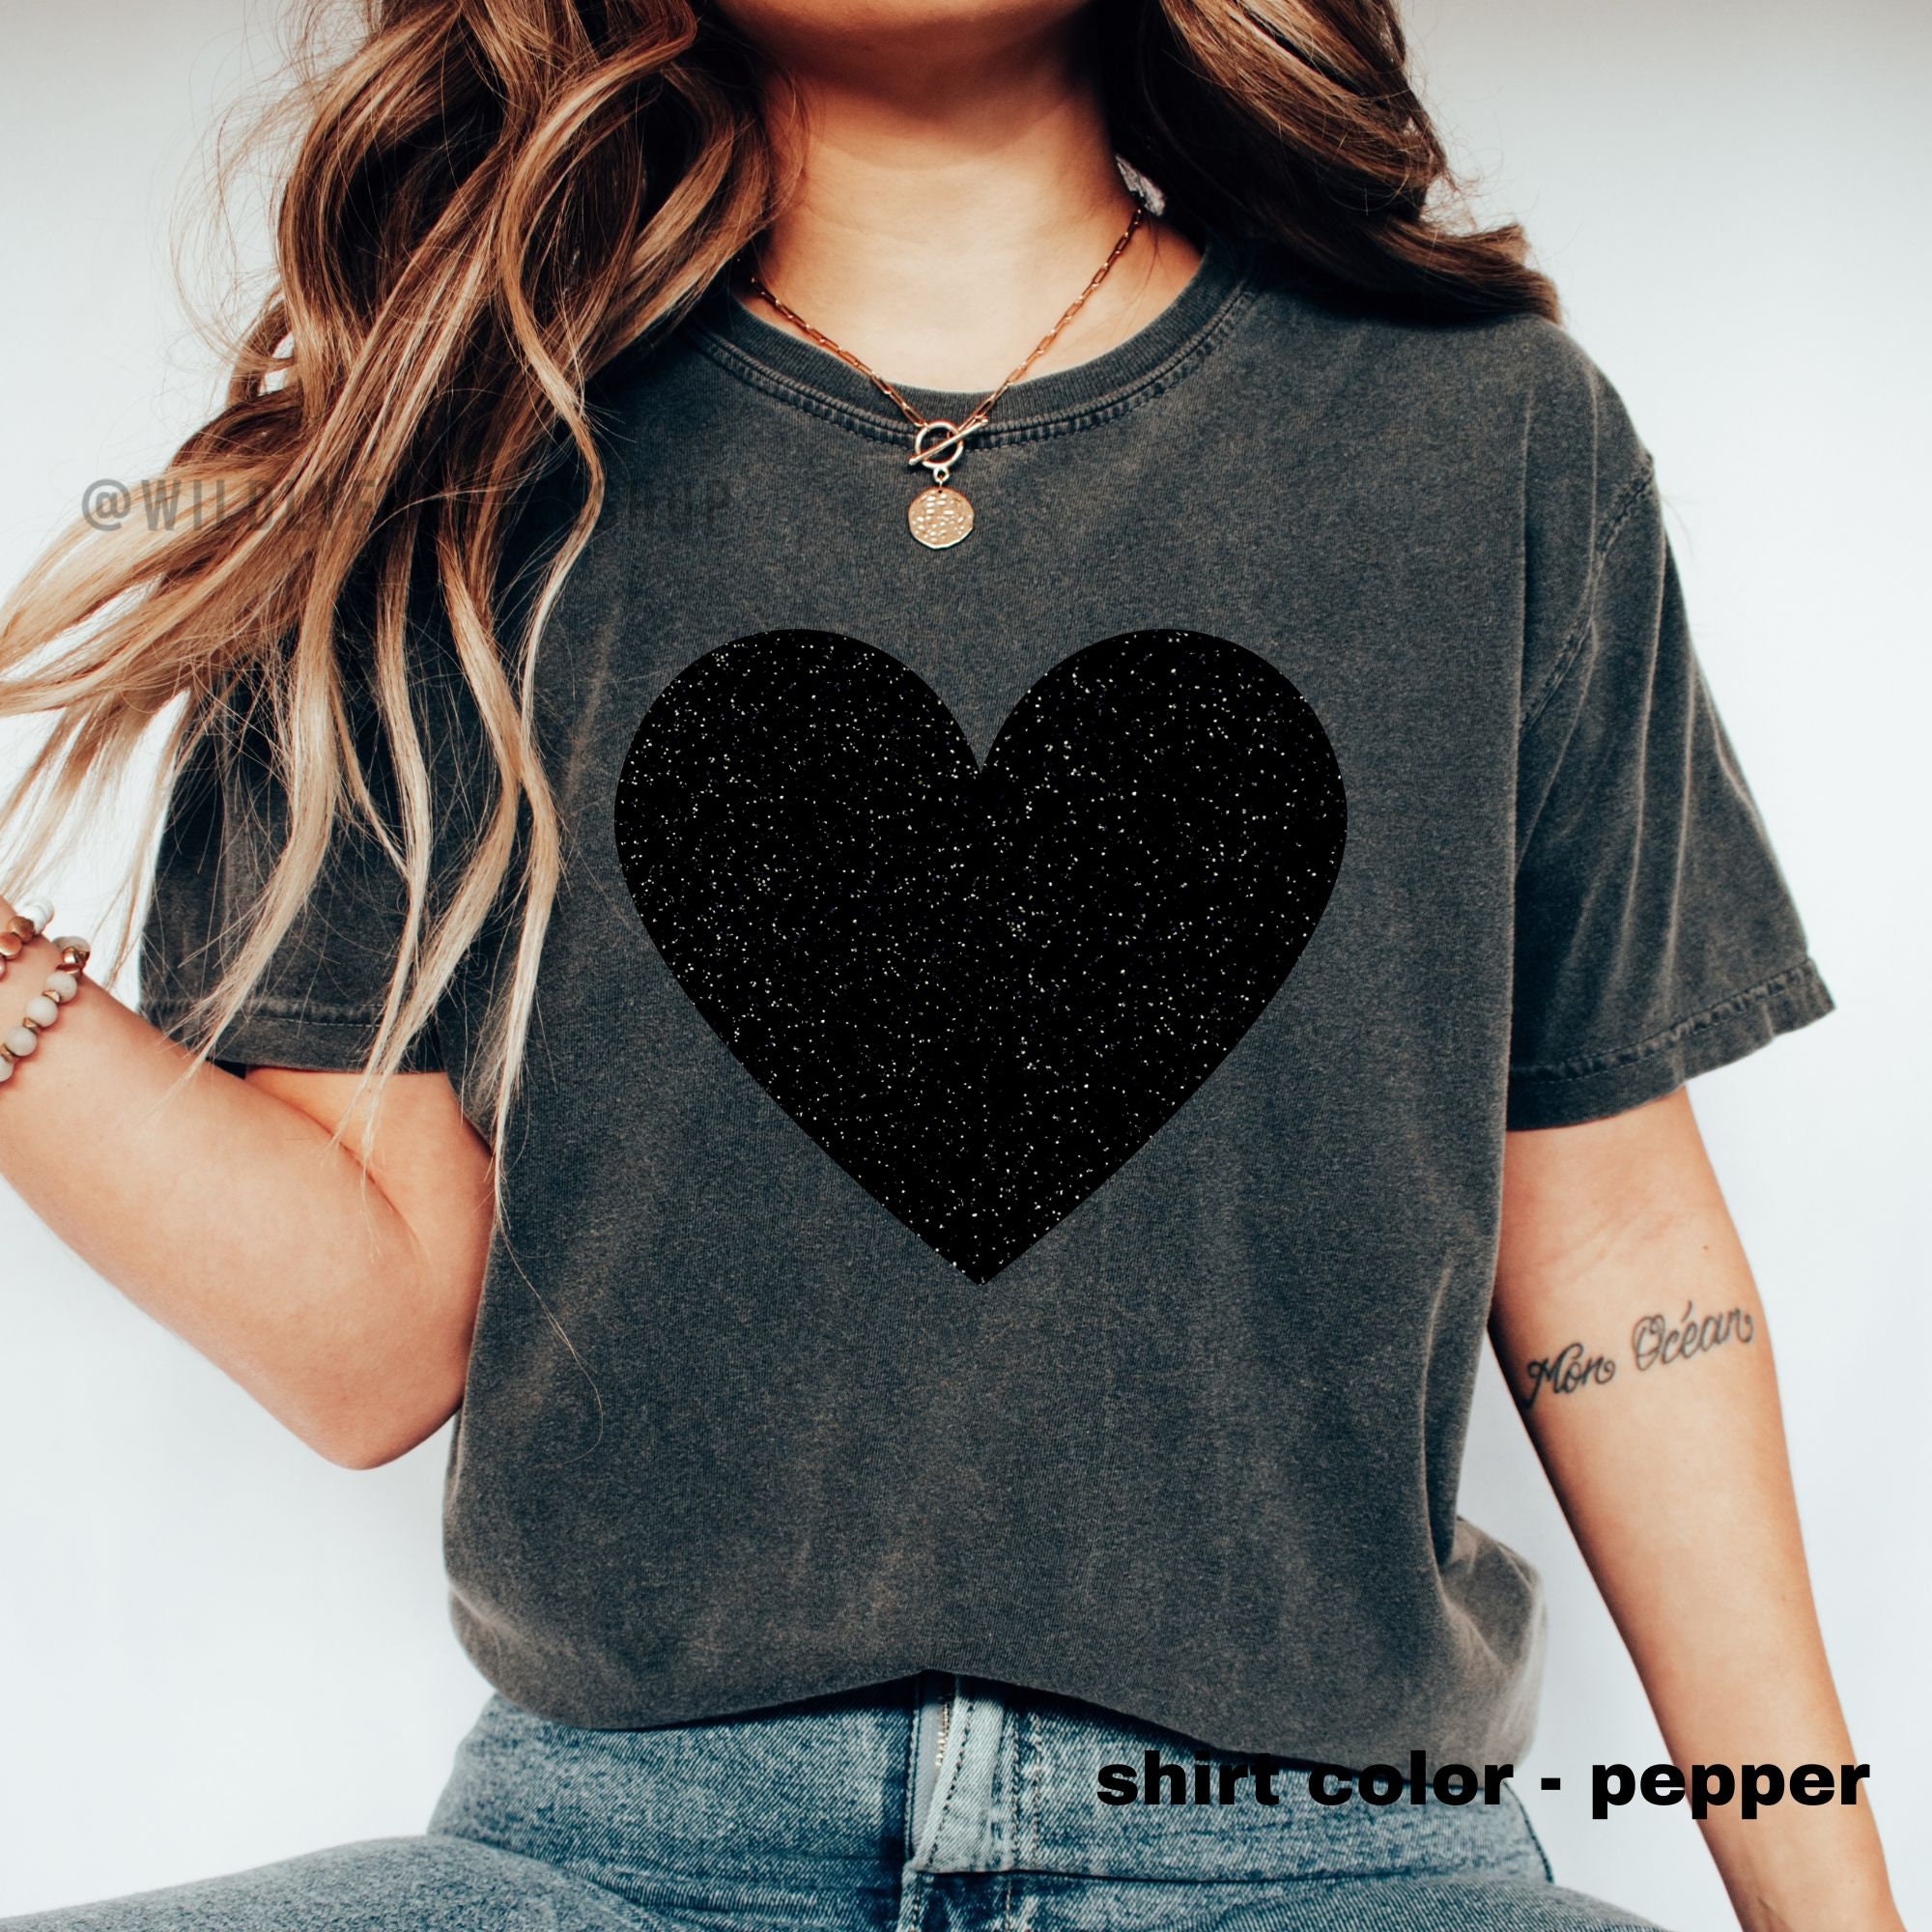 Black Heart T-shirt Heart Shirt Gift for Her Women's Black 